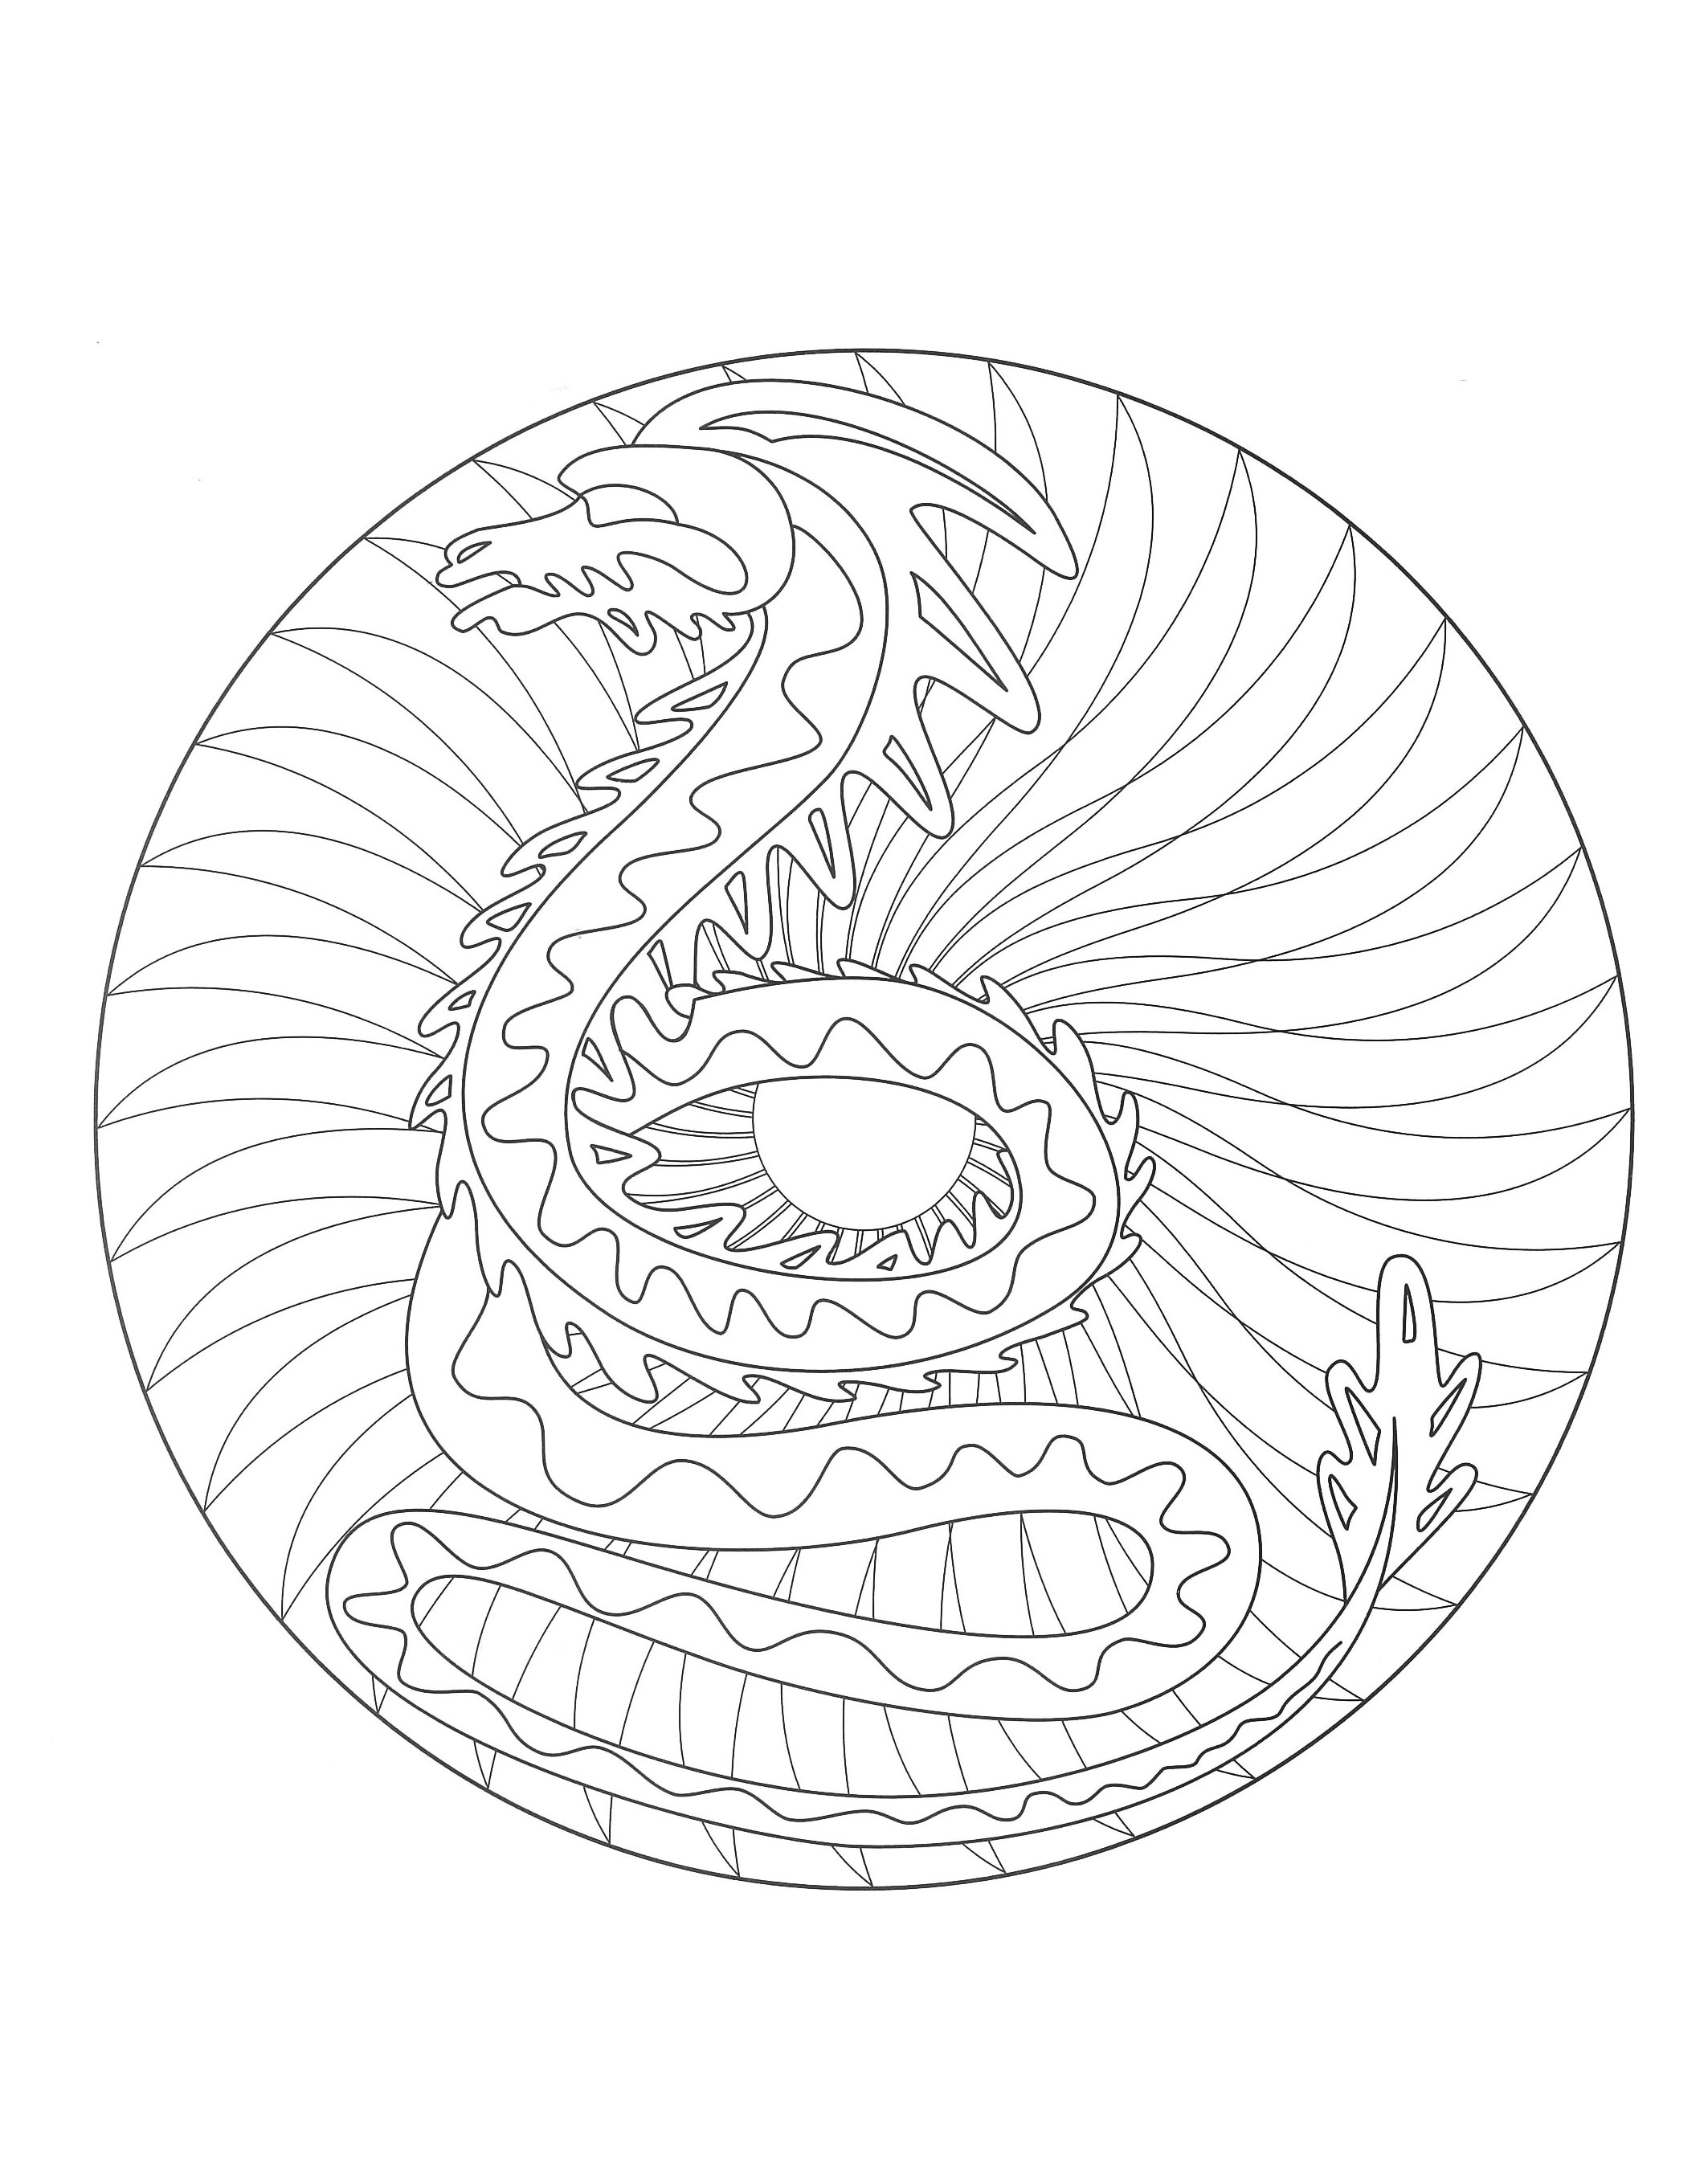 Ein Mandala mit einem beeindruckenden Drachen in der Mitte